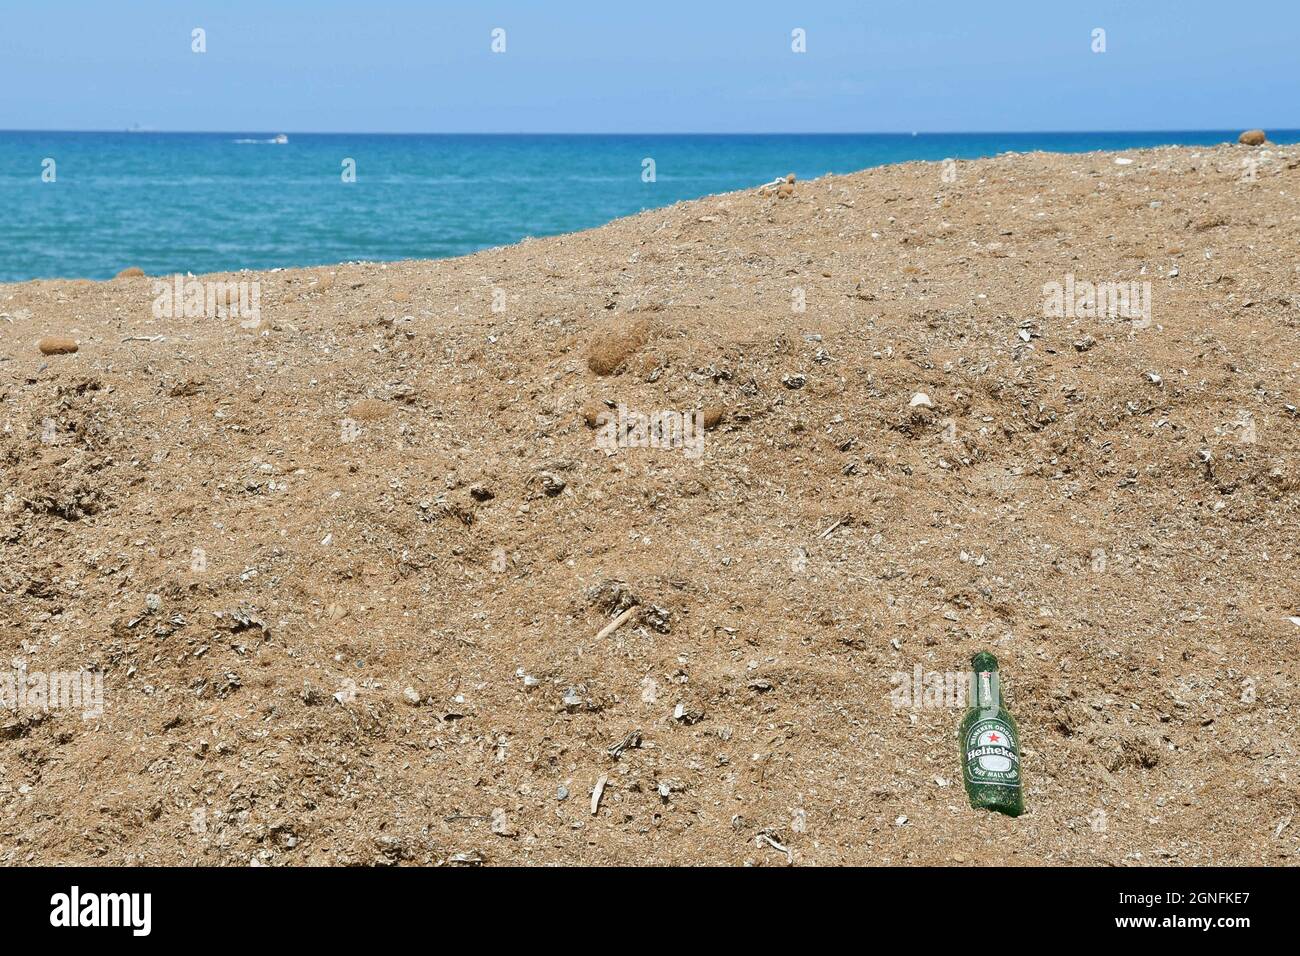 Eine leere Bierflasche, die am Sandstrand mit dem Meer im Hintergrund aufgegeben wurde, Umweltkonzept, San Vincenzo, Toskana, Italien Stockfoto